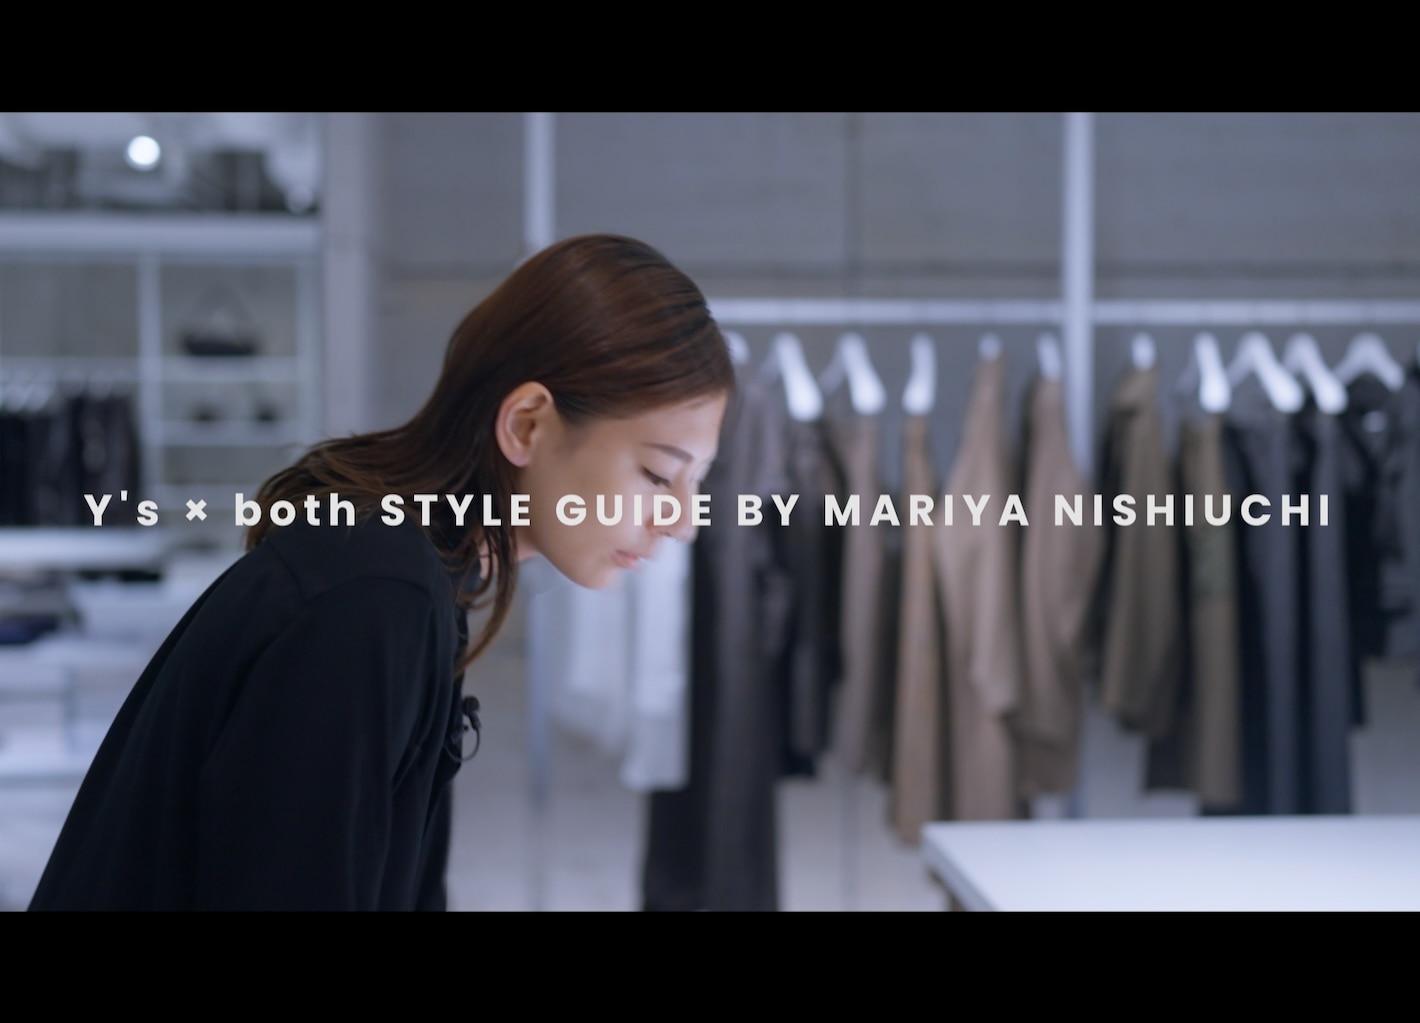 STYLE GUIDE BY MARIYA NISHIUCHI⁠ | Y’s x both